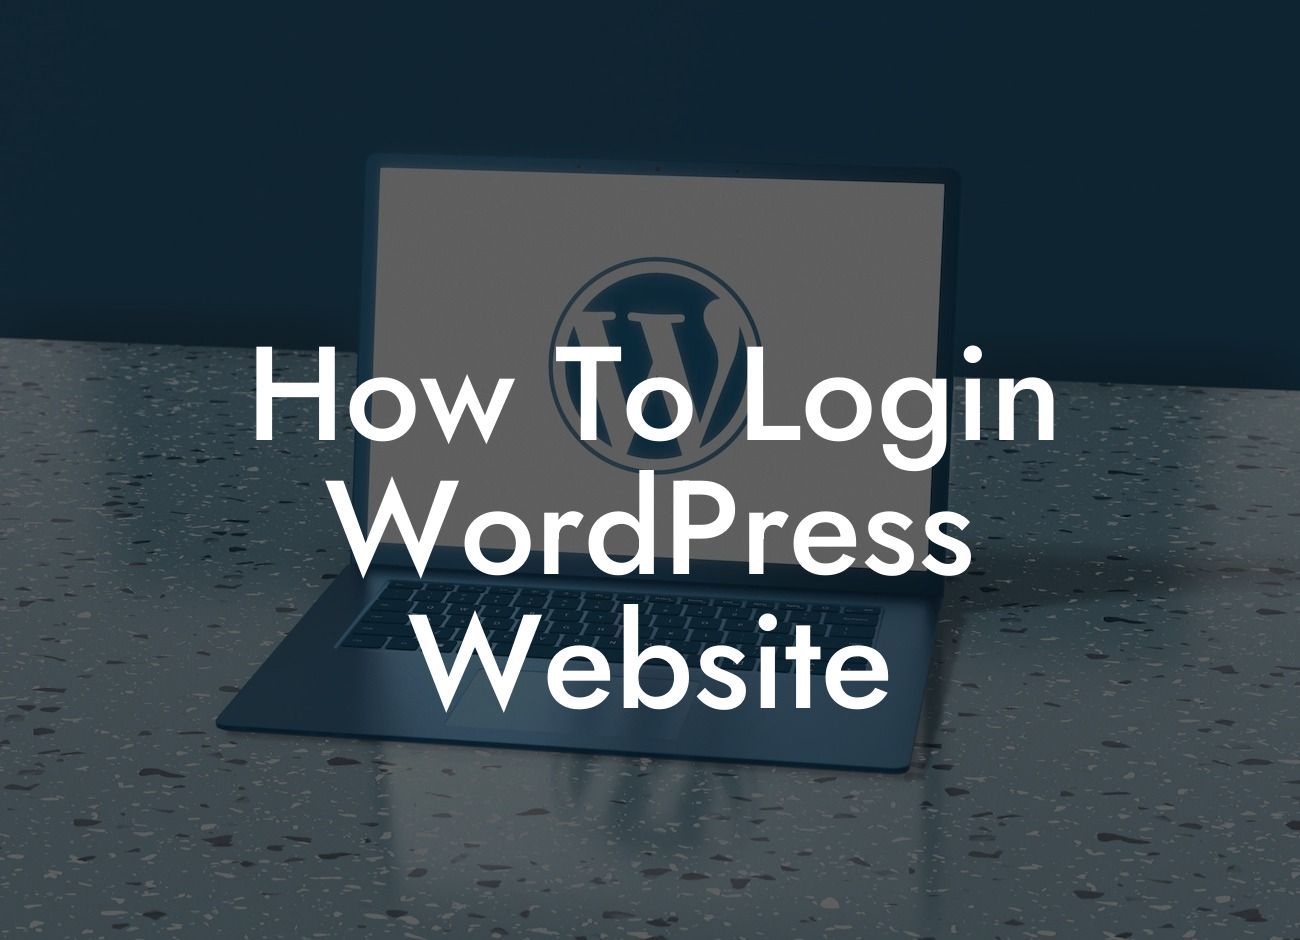 How To Login WordPress Website